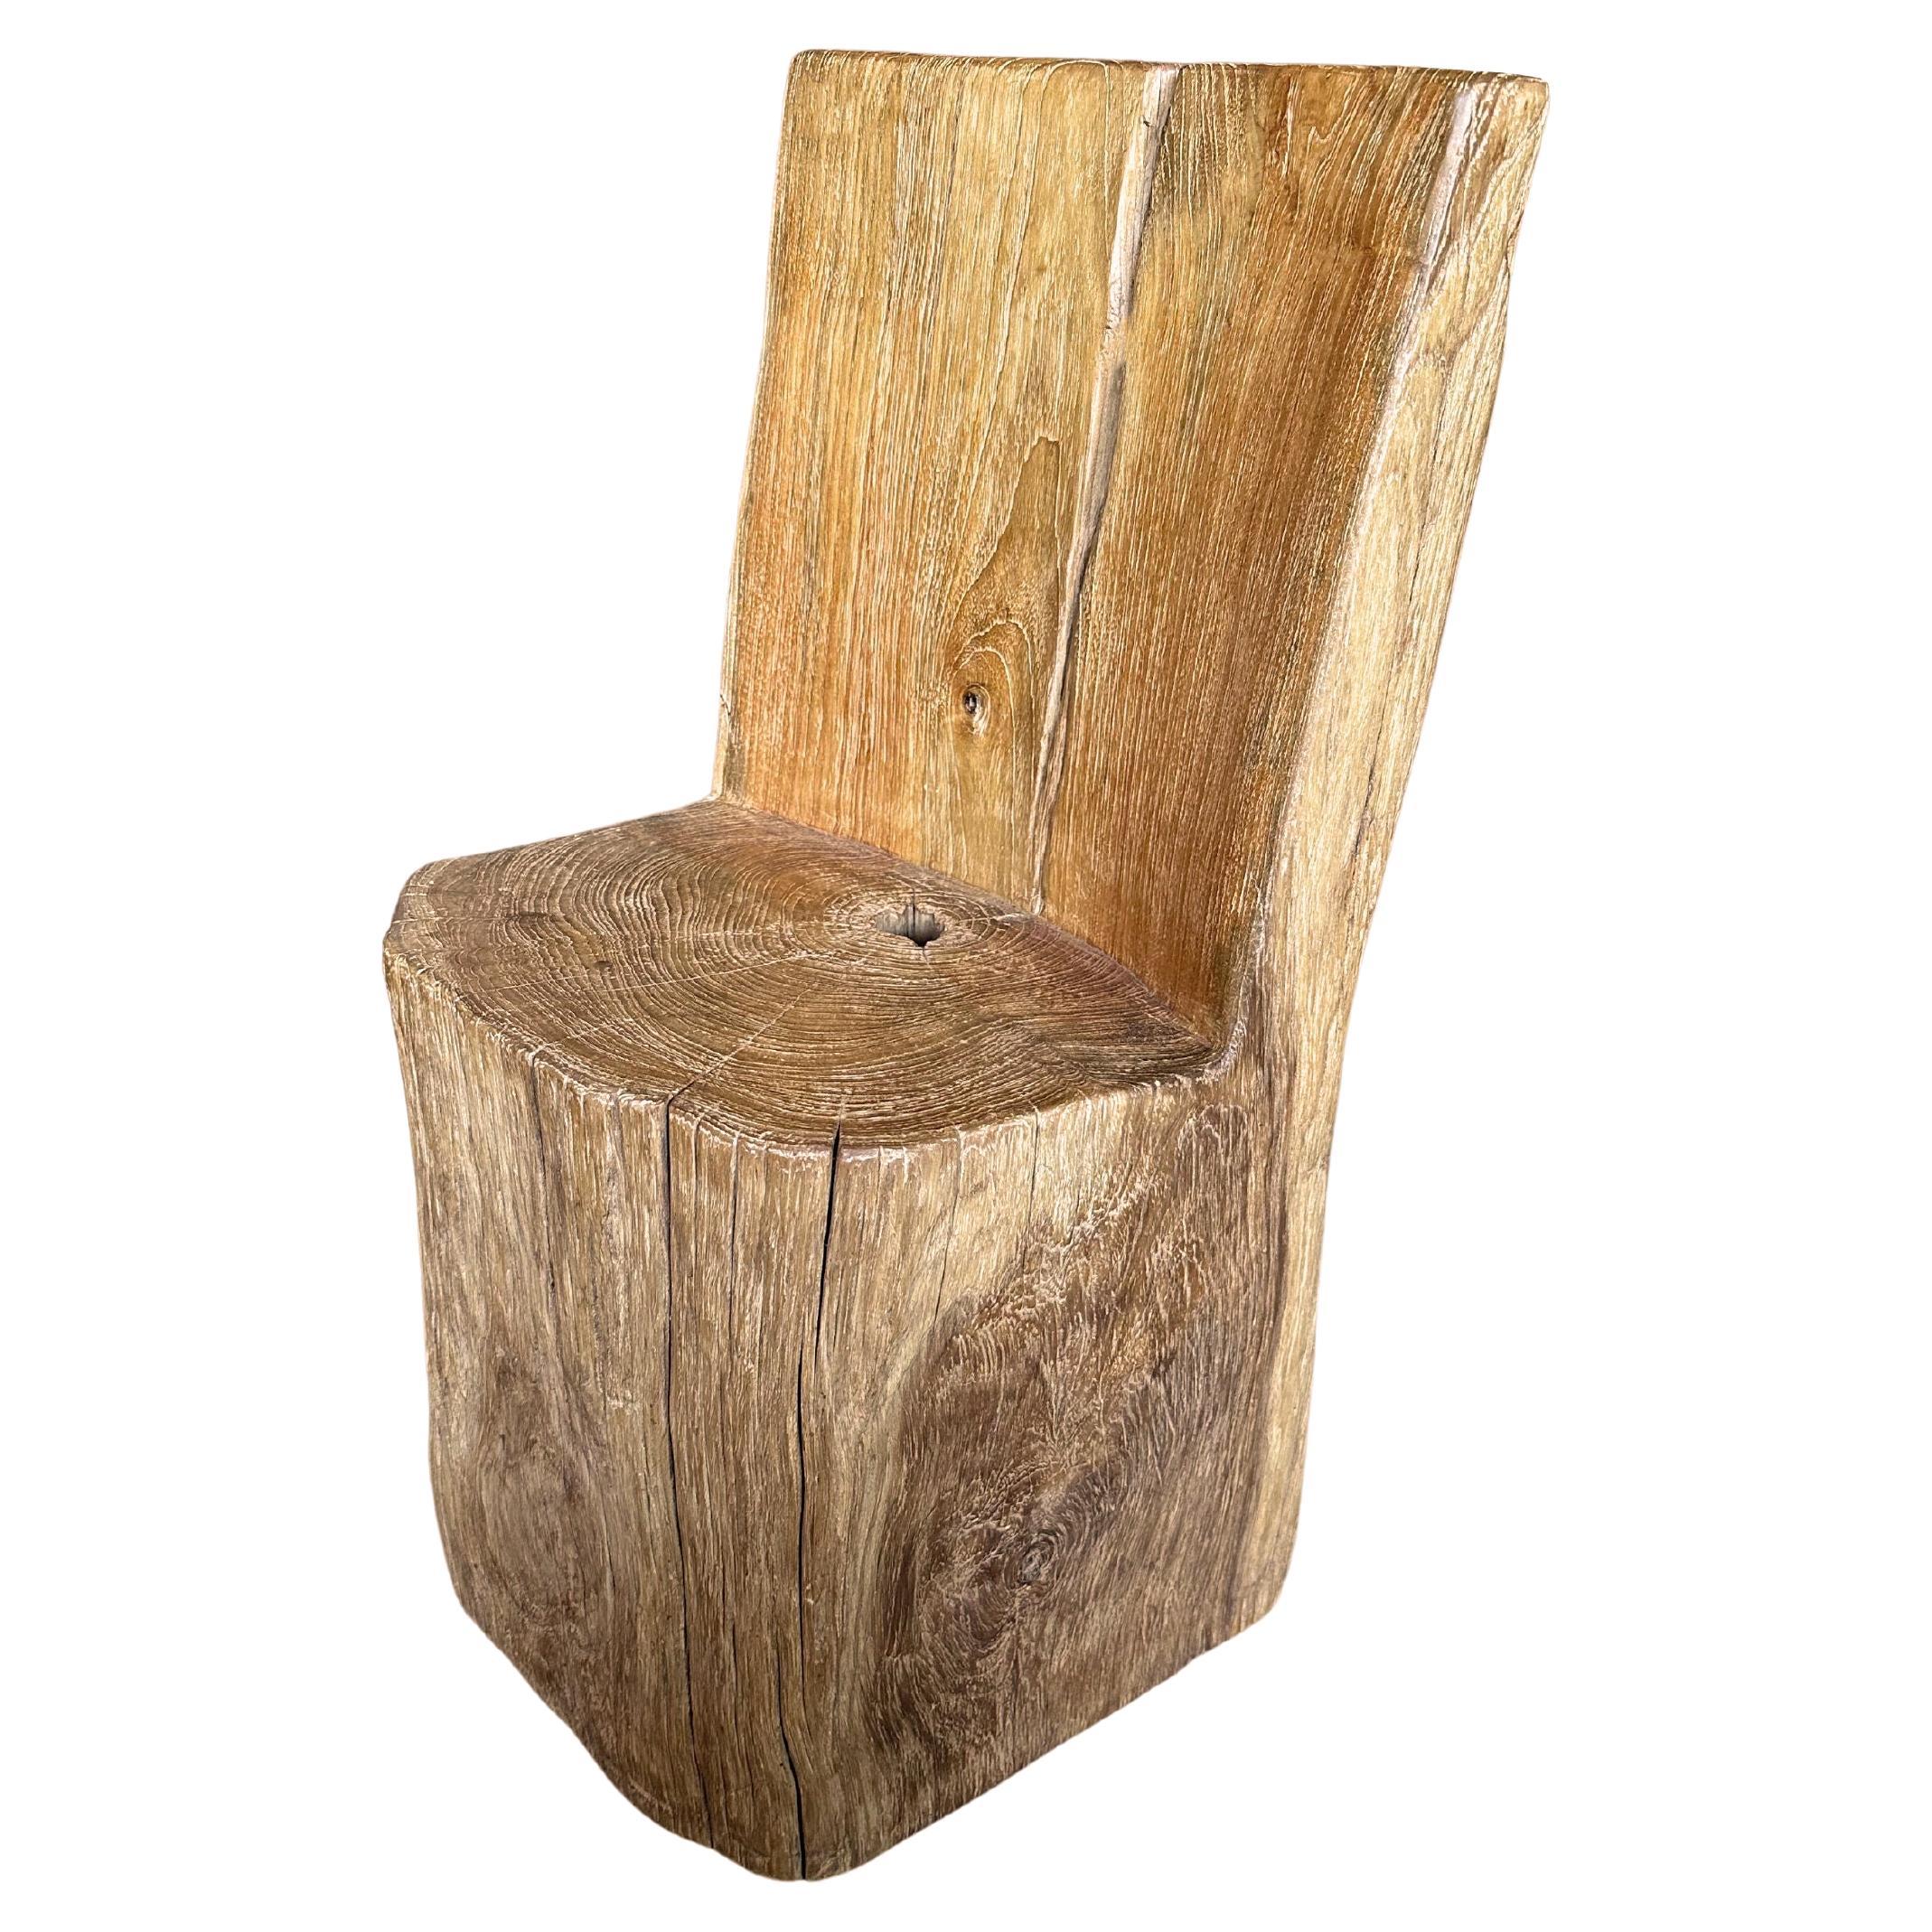 Sculptural Soild Teak Wood Chair